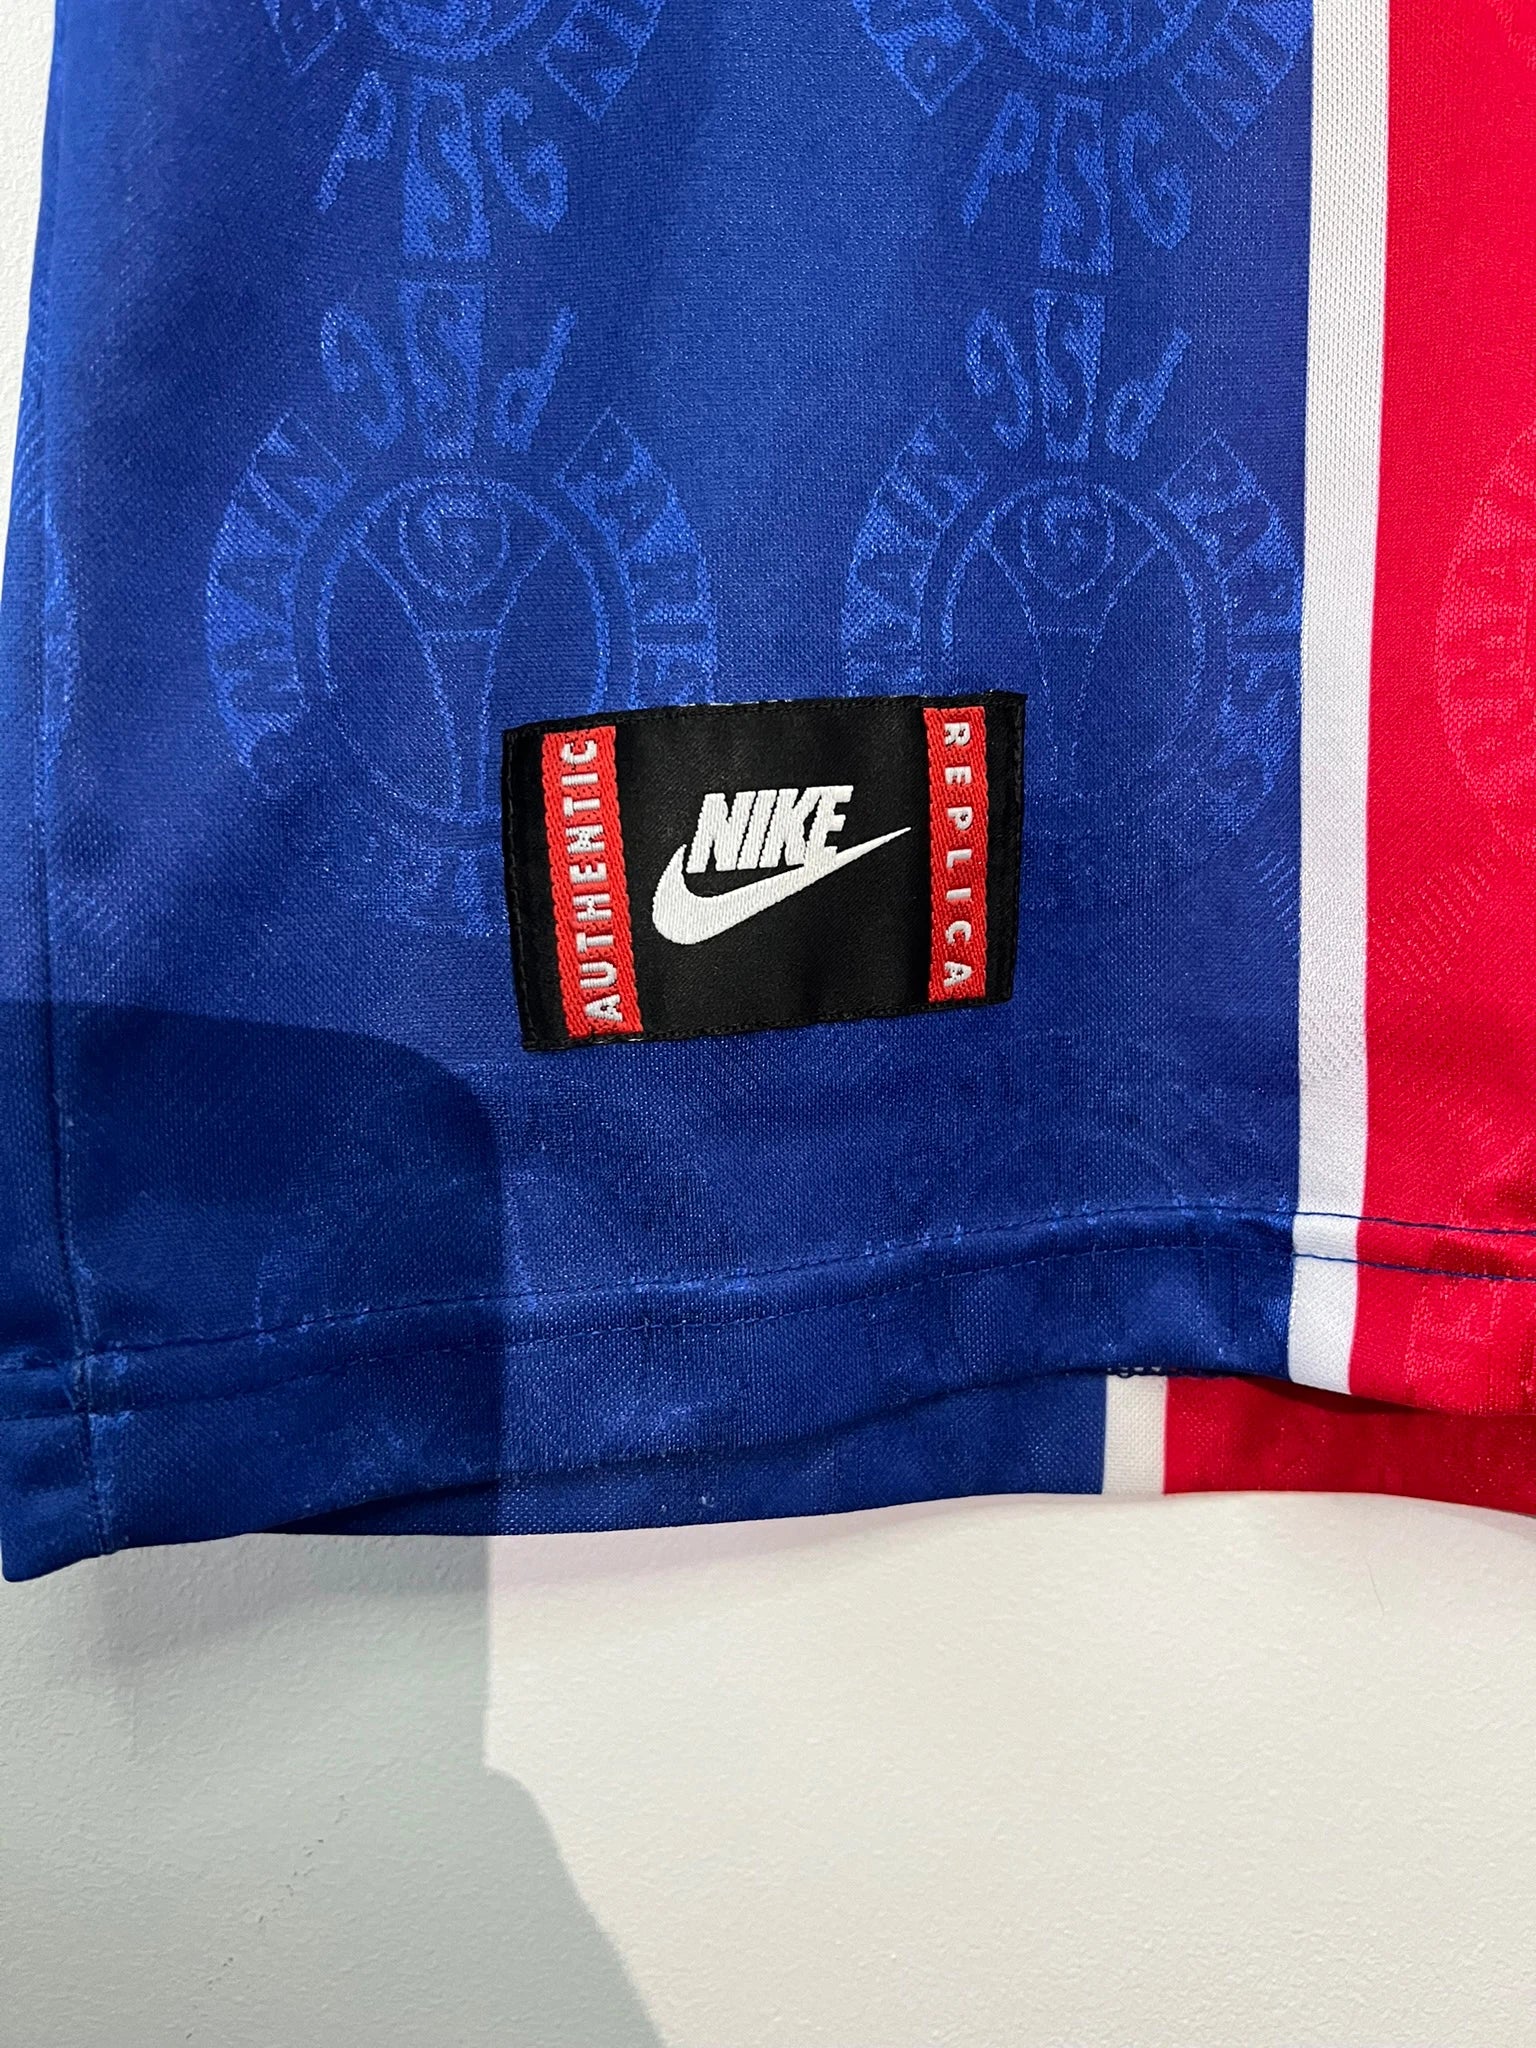 Maillot de foot vintage domicile du PSG de la saison 1996-1997. Il s'agit d'un maillot authentique. On peut retrouver l'équipementier nike et le sponsor opel